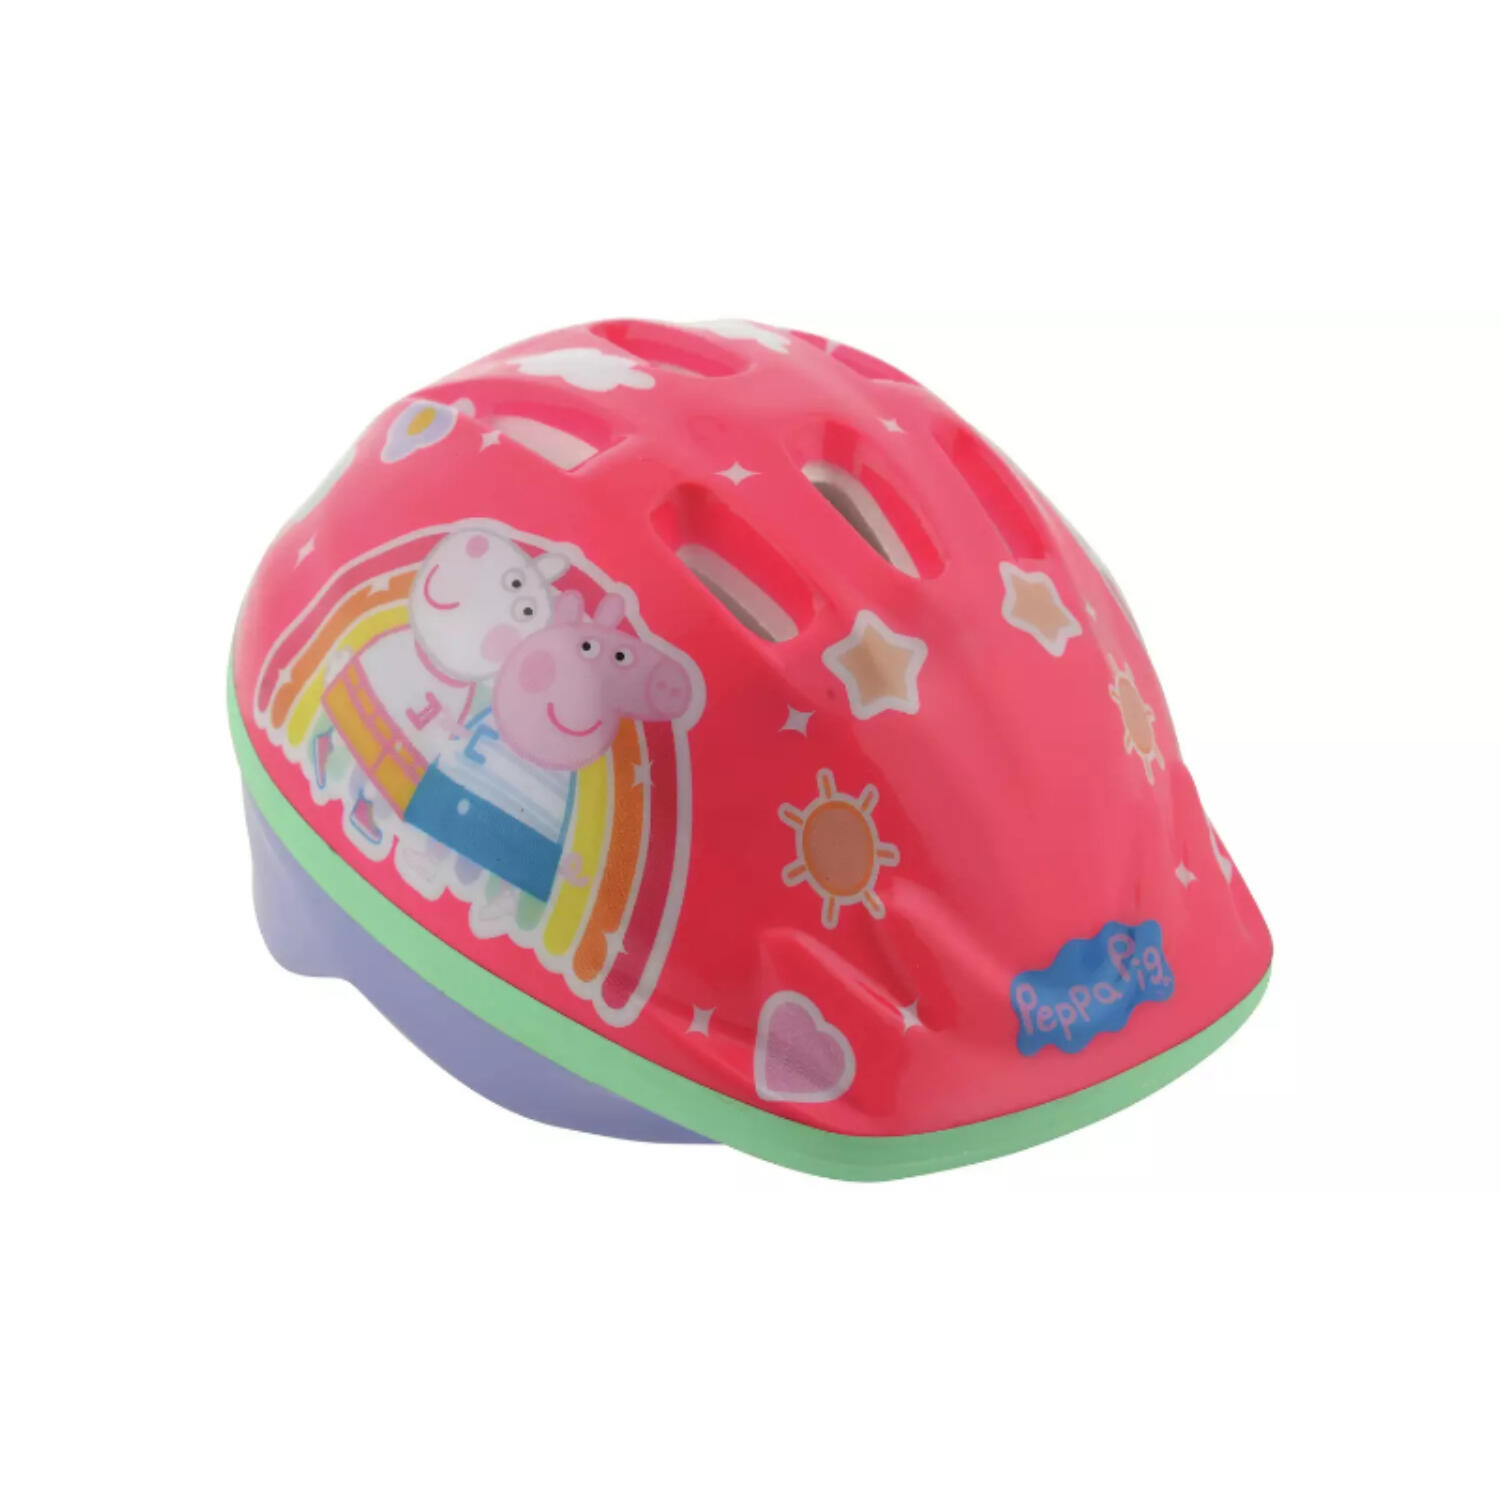 PEPPA PIG Peppa Pig Kids Bike Helmet - 48-52cm